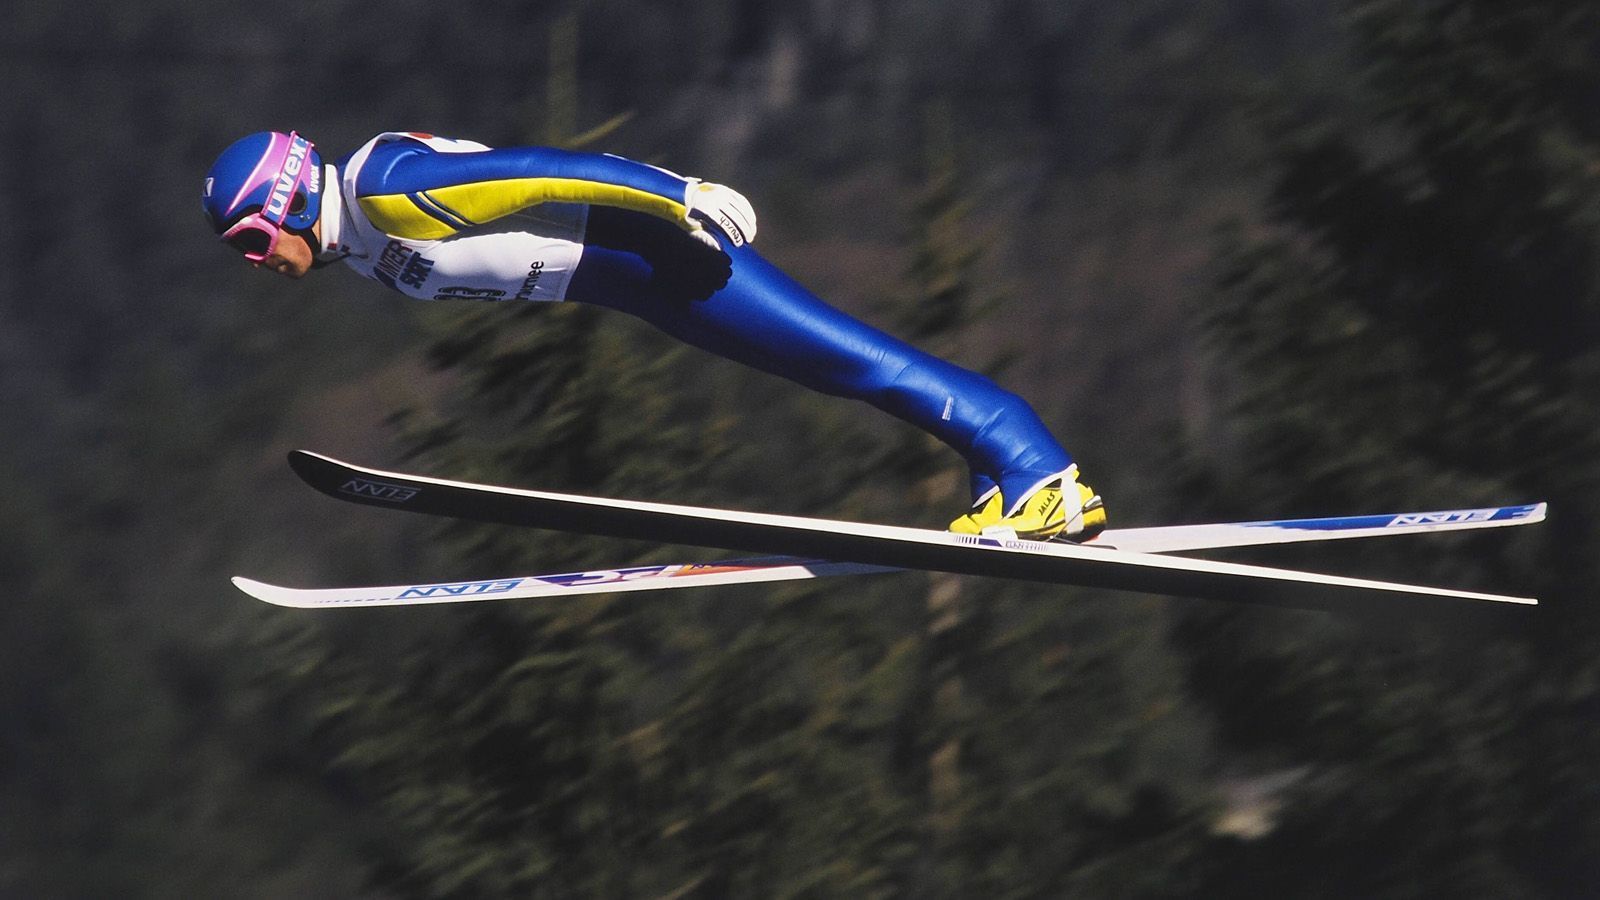 
                <strong>Jan Boklöv revolutioniert das Skispringen</strong><br>
                Es ist nur einer von fünf Siegen im Weltcup - als Jan Boklöv 1988 mit dem V-Stil in Lake Placid erstmals auf dem Podest ganz oben steht, leitet er damit den Abschied des Parallel-Stils ein. Aber erst 1992 gibt es für die V-Stellung der Skier in der Luft keinen Punktabzug mehr. Nachdem er zuvor den Konkurrenten meist etliche Meter abnimmt, verläuft im Anschluss nach seiner Revolution seine Karriere im Sand. Immerhin kann er sich mit dem Gesamtweltcup 1988/89 vor Jens Weißflog und Dieter Thoma - sowie den Skisprung verändert zu haben trösten.
              